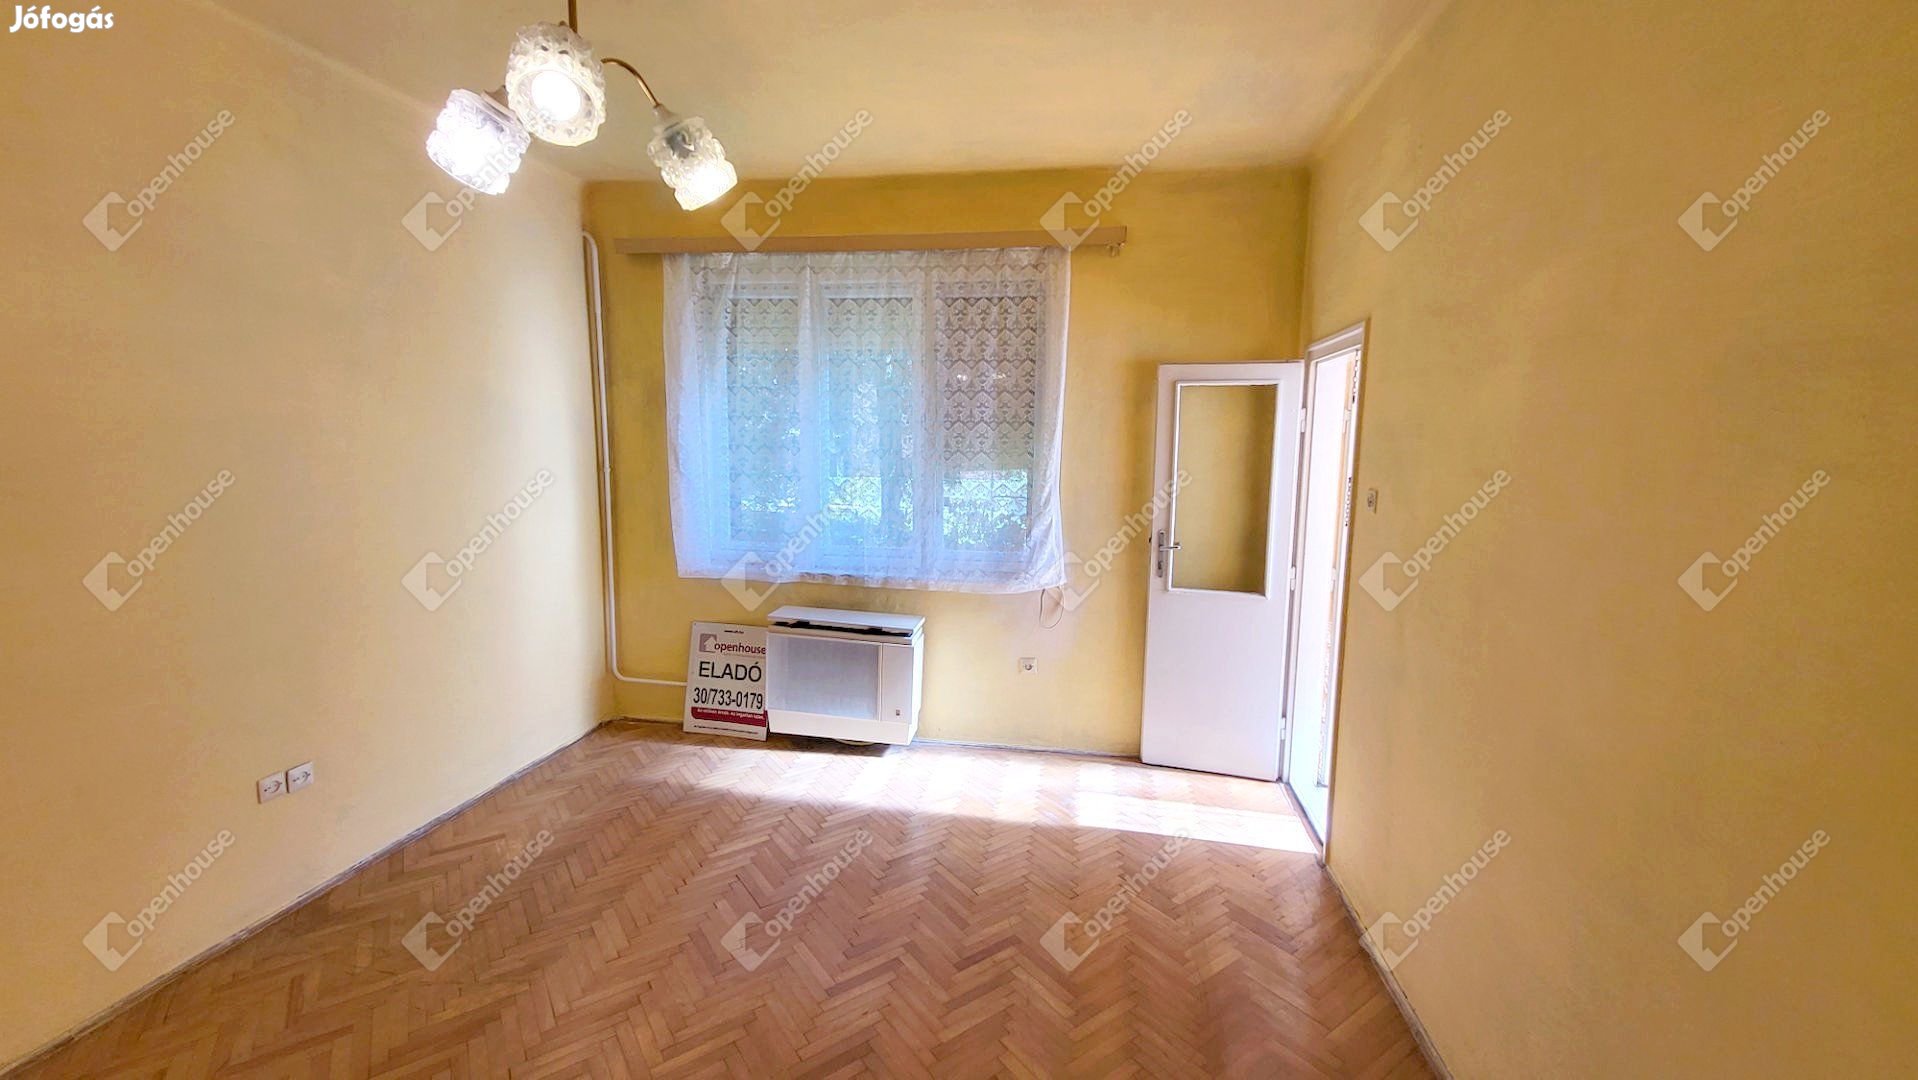 Miskolc, eladó társasházi lakás